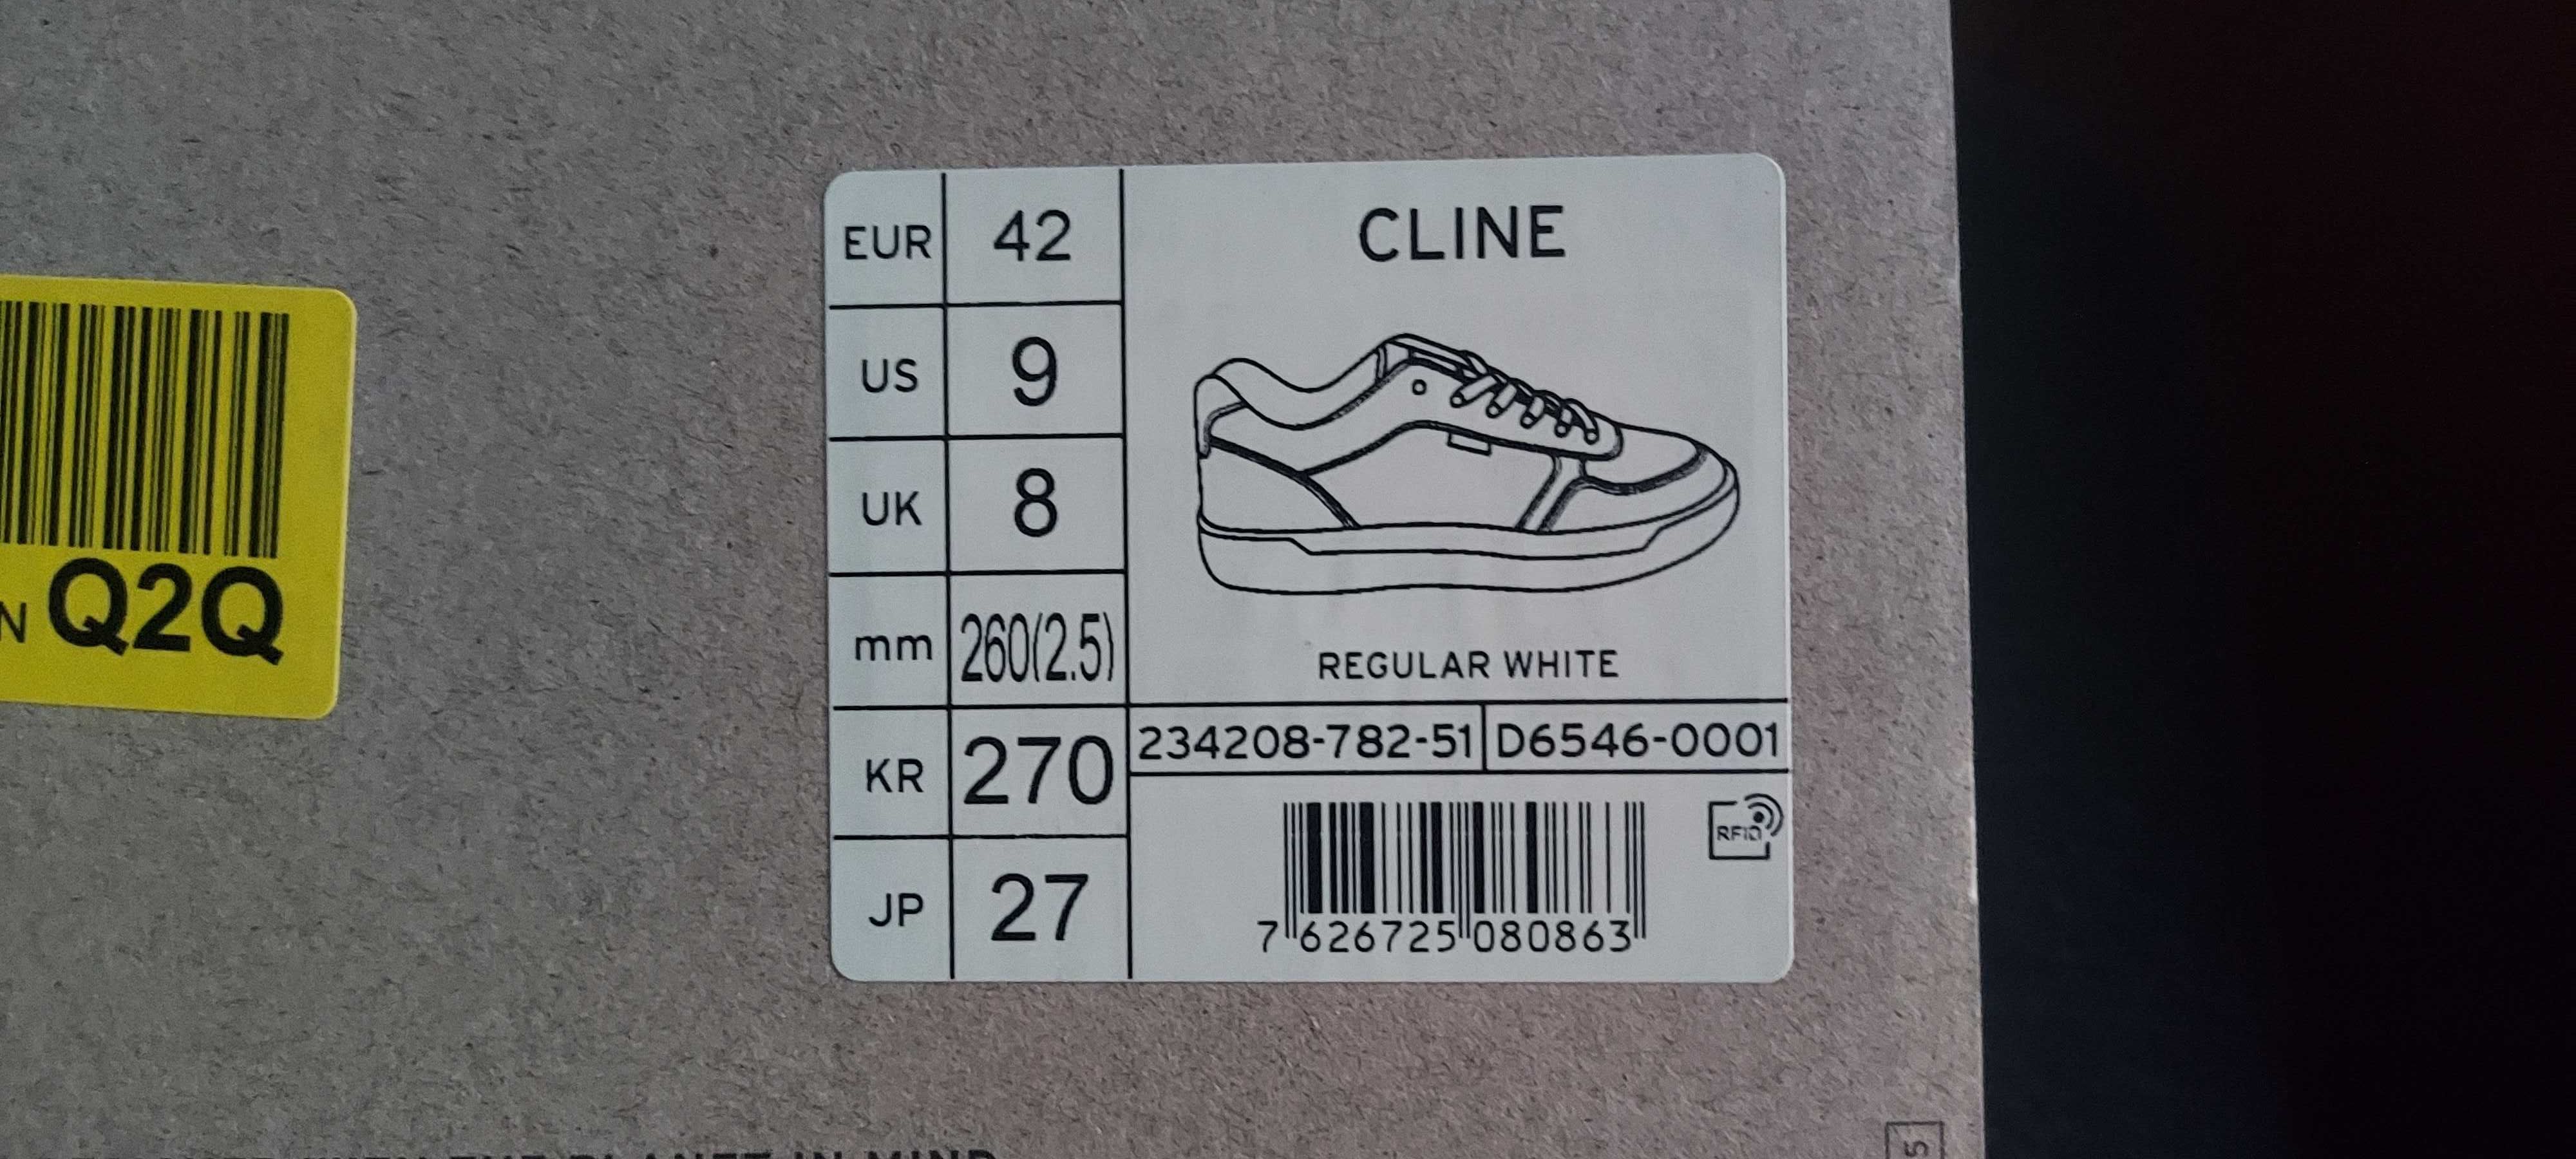 Levis oryginalne skórzane buty męskie CLINE - Sneakersy niskie 42